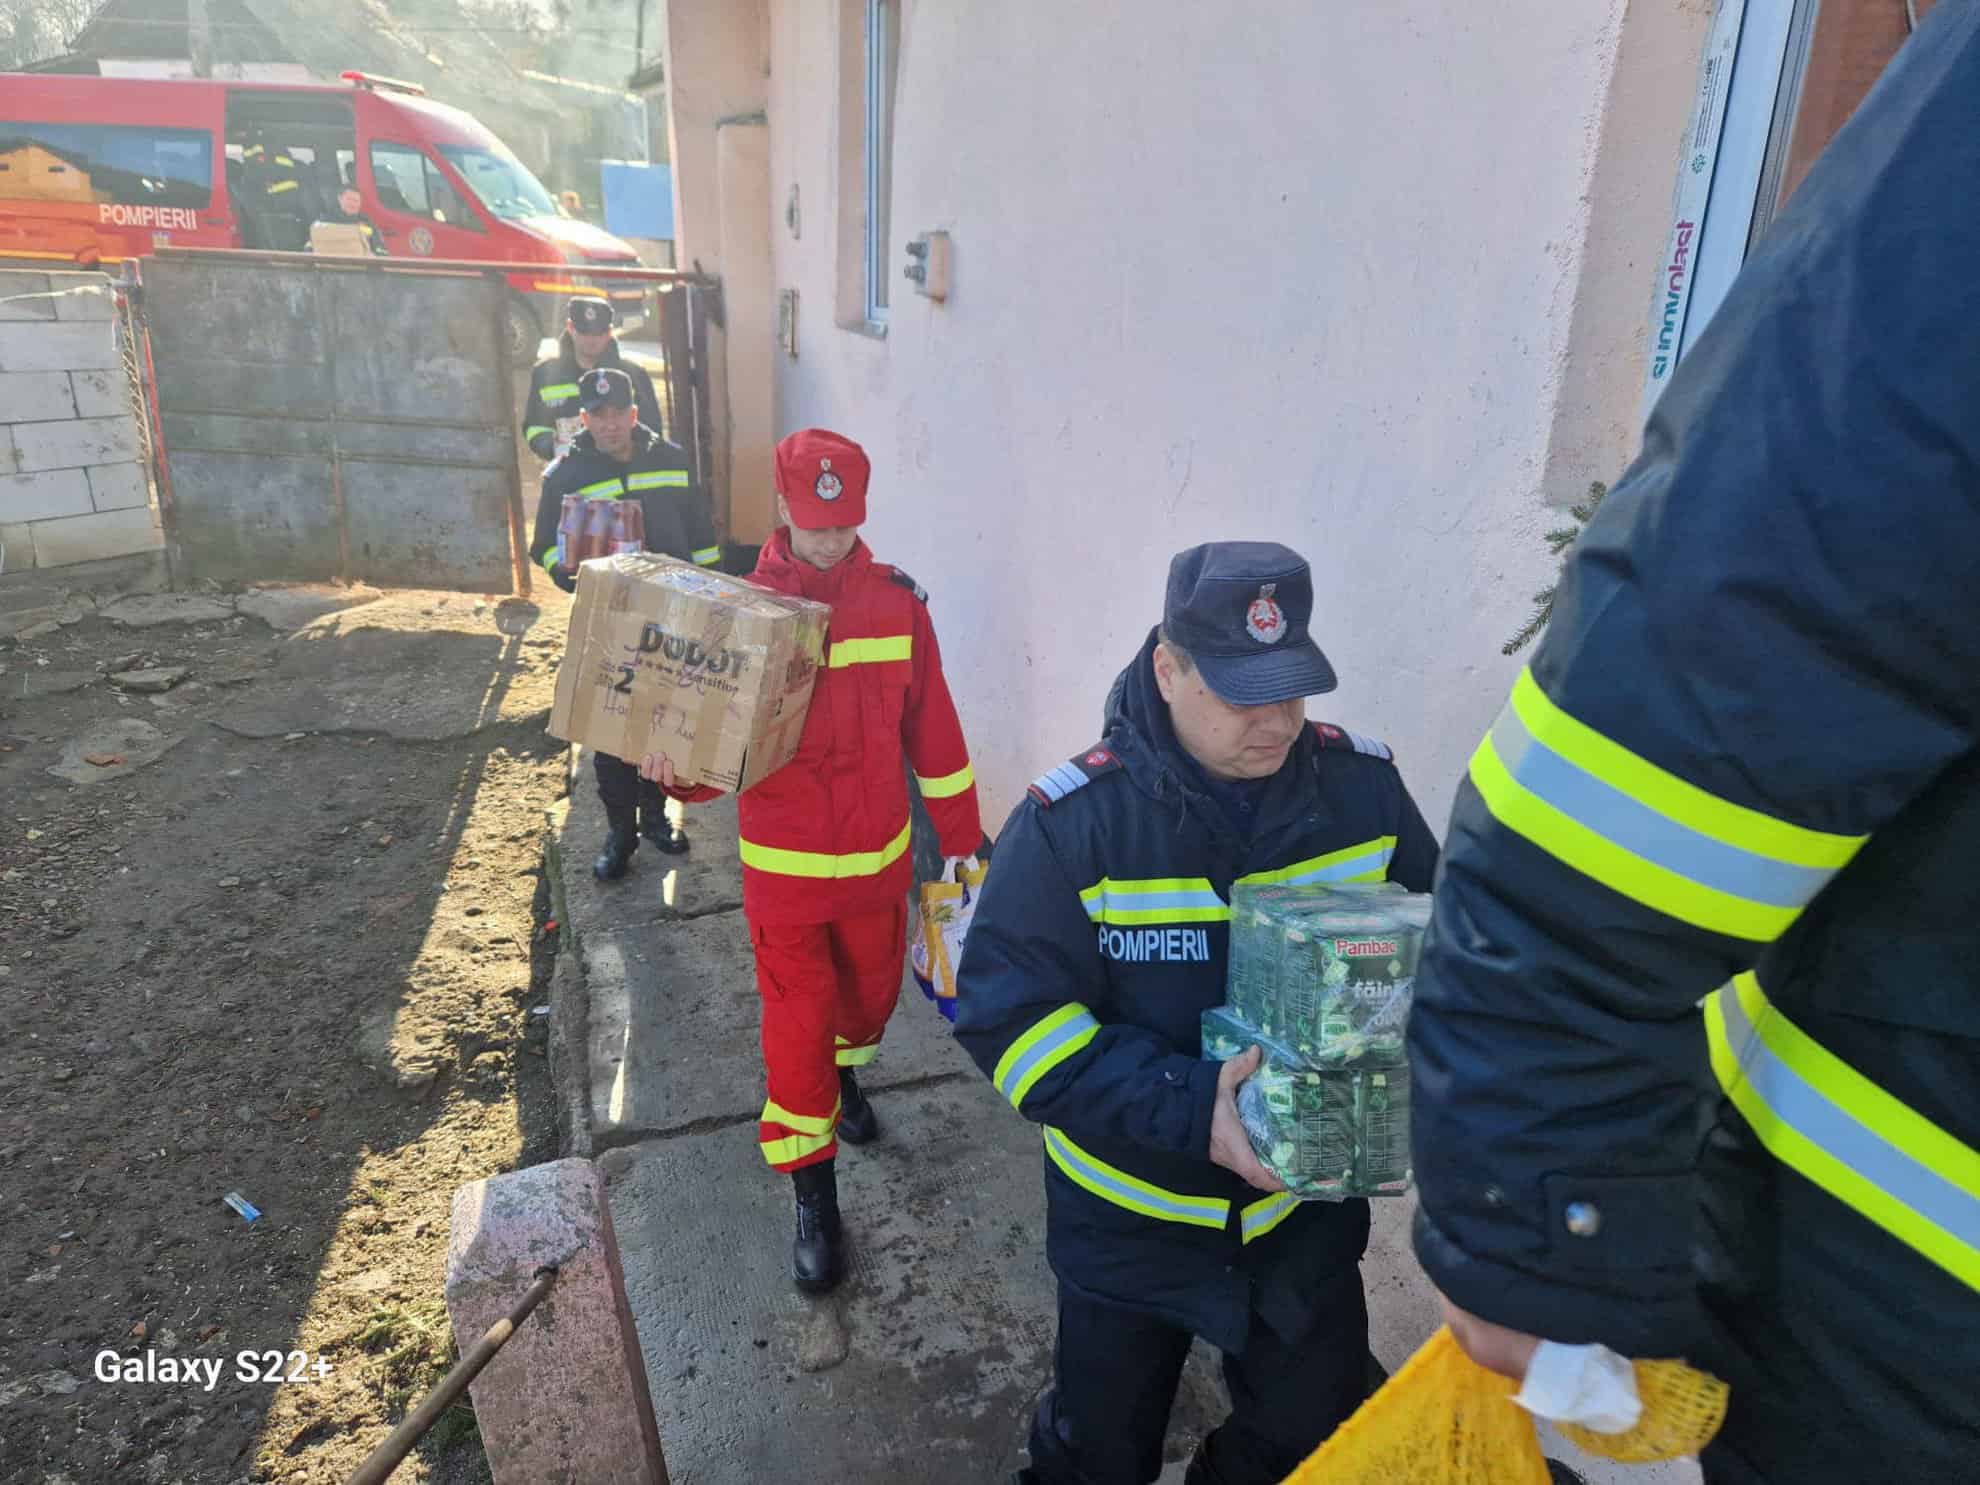 zeci de copii din coveș au primit cadouri de la pompieri. patru dintre micuți au fost salvați dintr-un incendiu (foto)